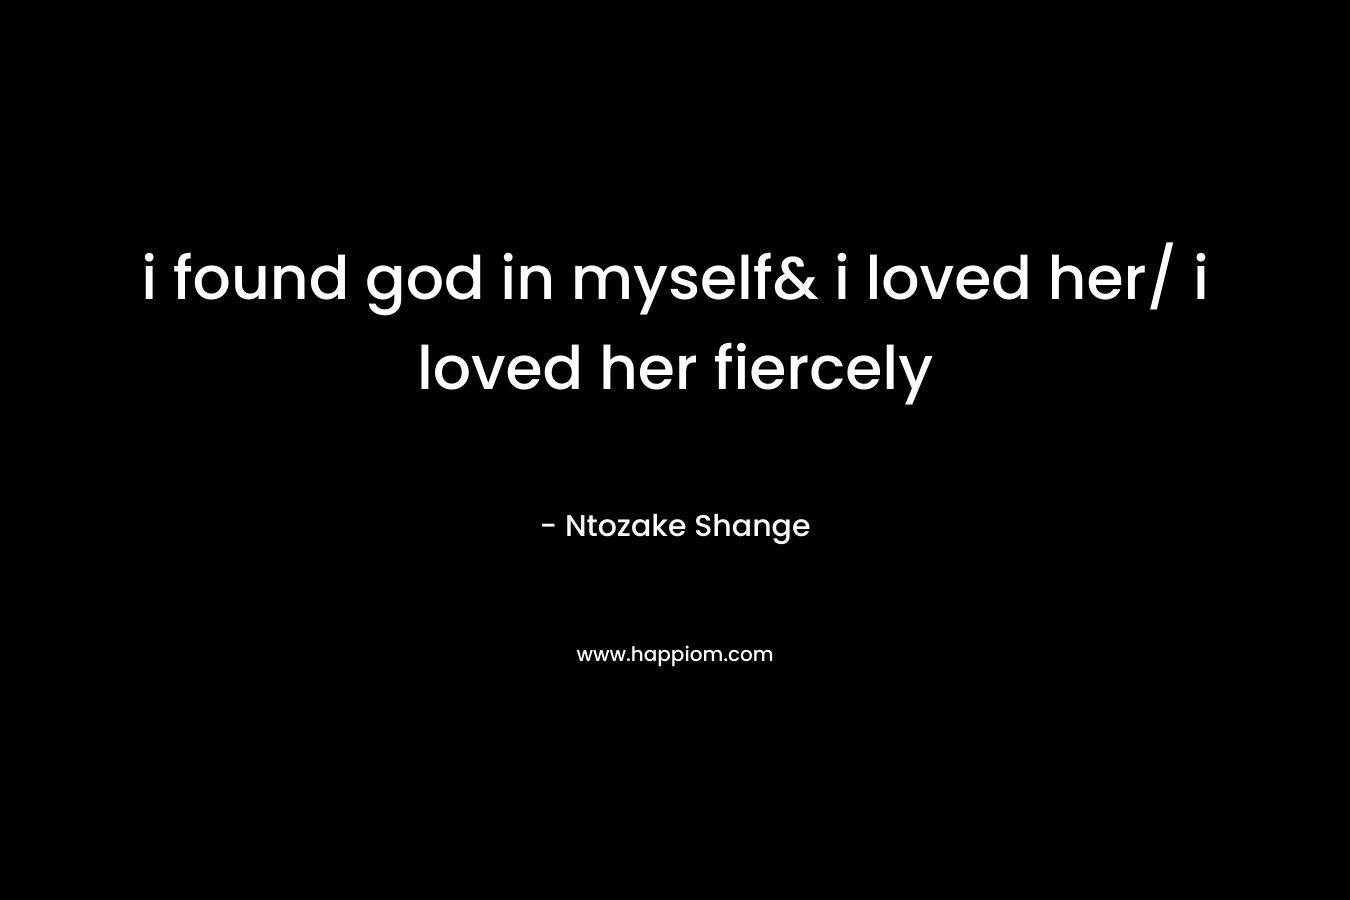 i found god in myself& i loved her/ i loved her fiercely